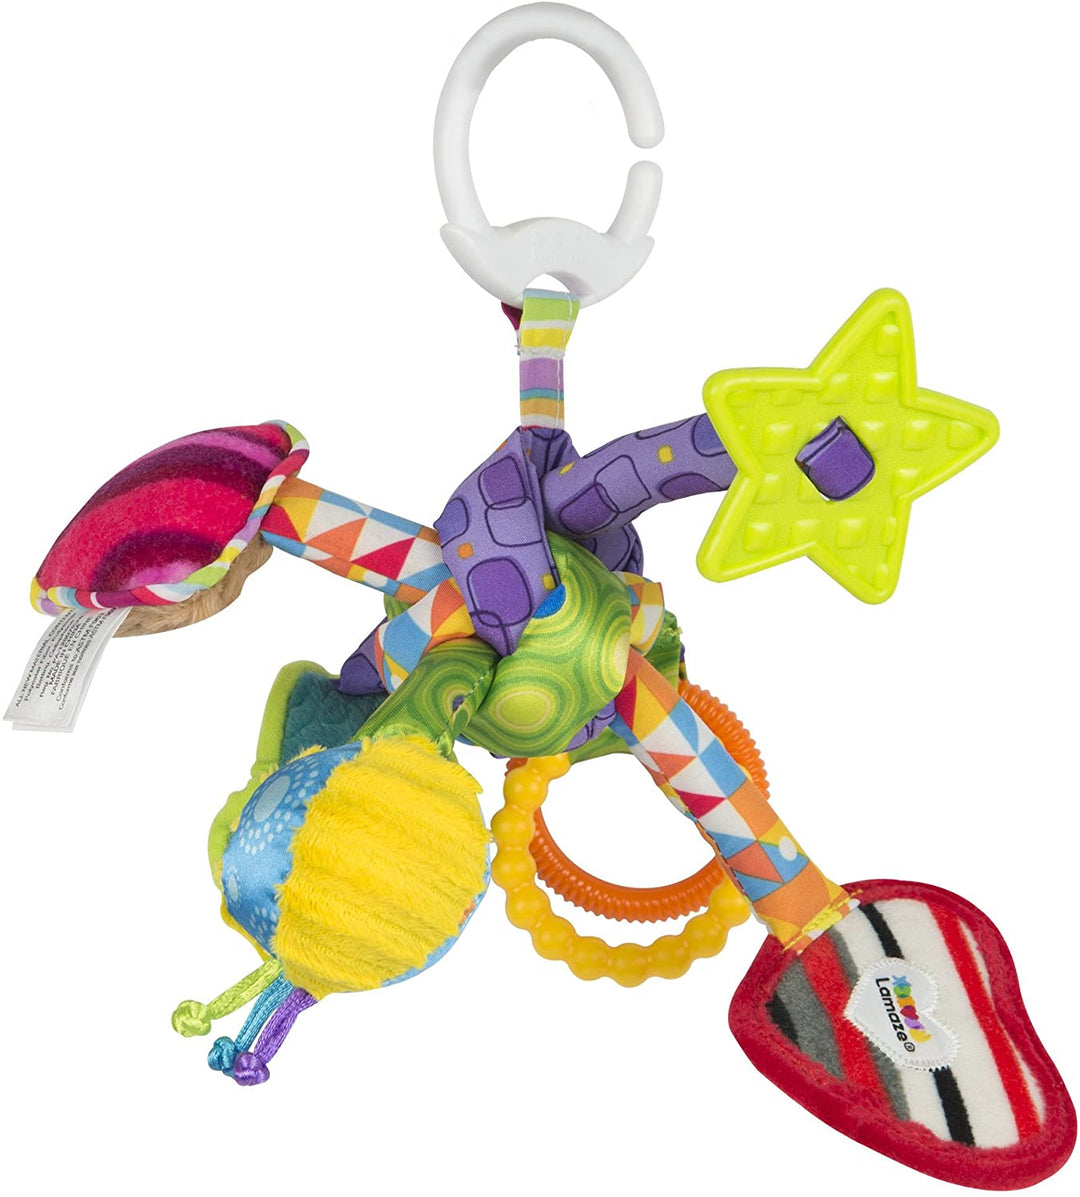 Lamaze Babyspielzeug zum Ziehen und Spielen mit Knoten, Clip-on-Spielzeug für Kinderwagen und Kinderwagen, ideales Geschenk zur Babyparty für frischgebackene Eltern, sensorisches Spiel für Babys, Jungen und Mädchen von 0–6 Monaten